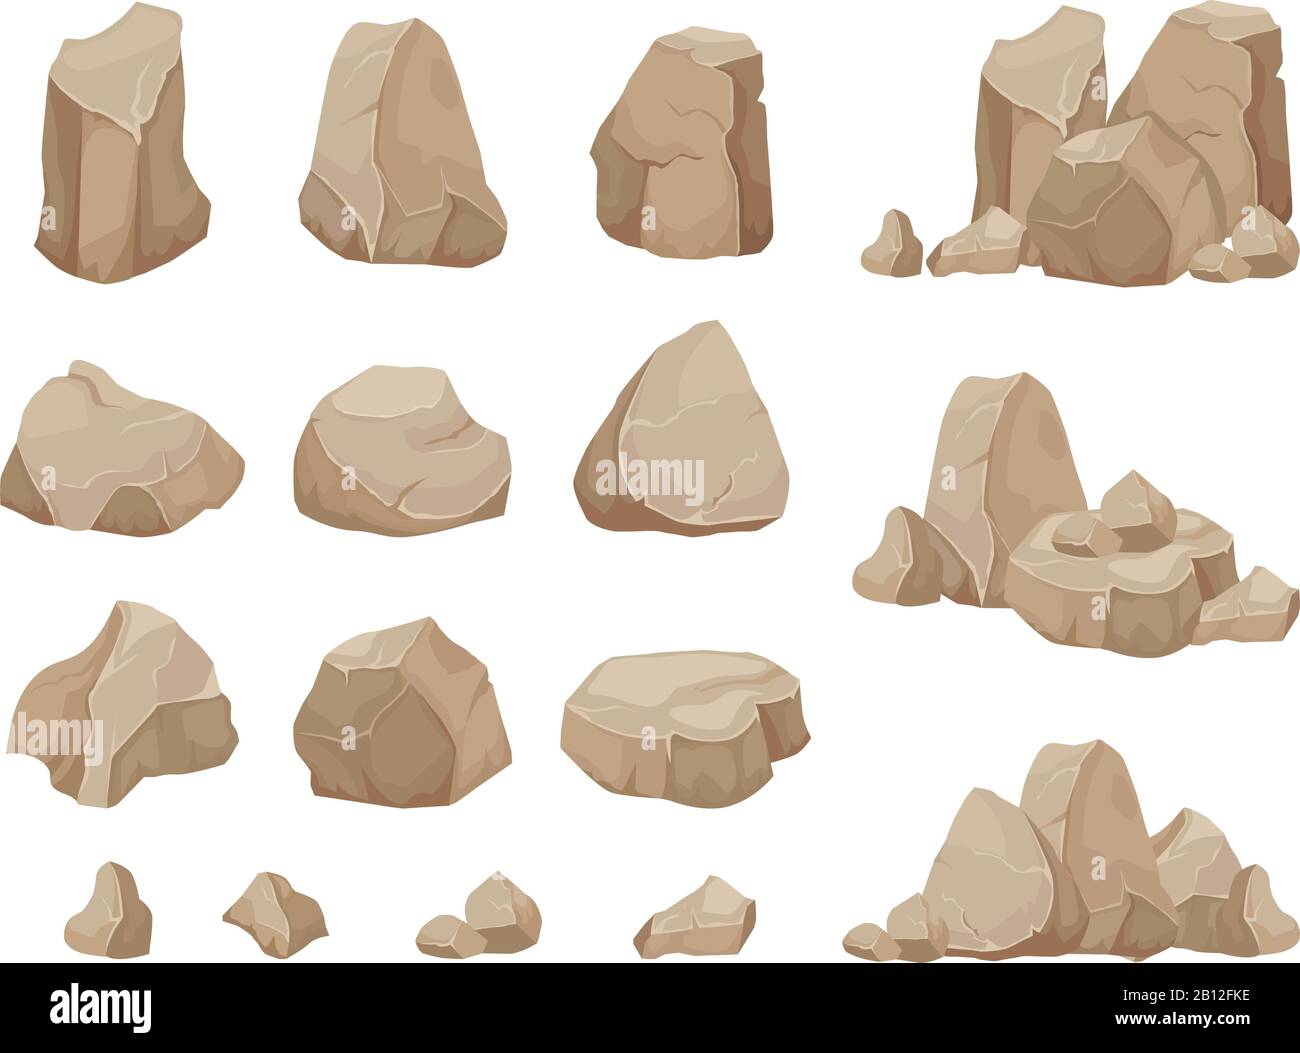 Steinfelsen. Steine Felsbrocken, Schotterschutt und Haufen von Felsen Cartoon isolierte Vektor-Satz Stock Vektor